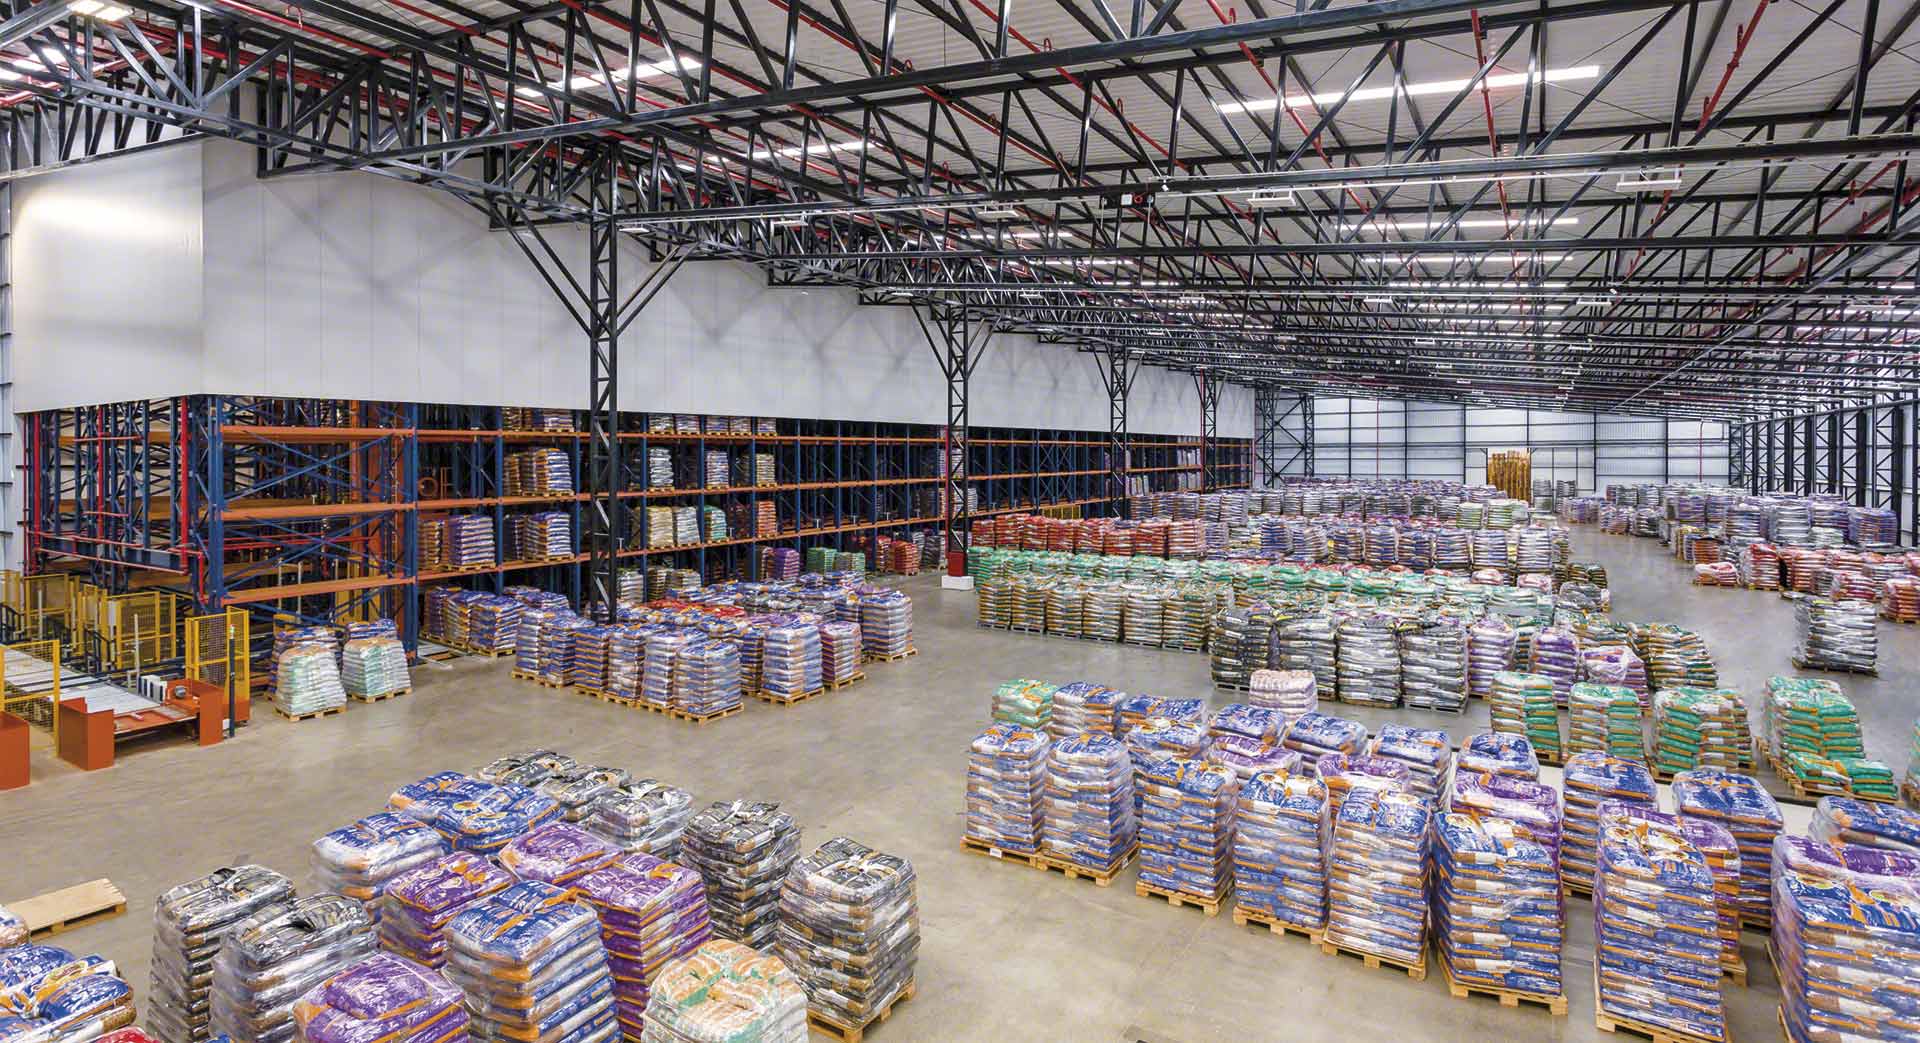 Das On-Demand-Warehousing stellt die Weiterentwicklung der herkömmlichen 3PL-Logistikdienste dar